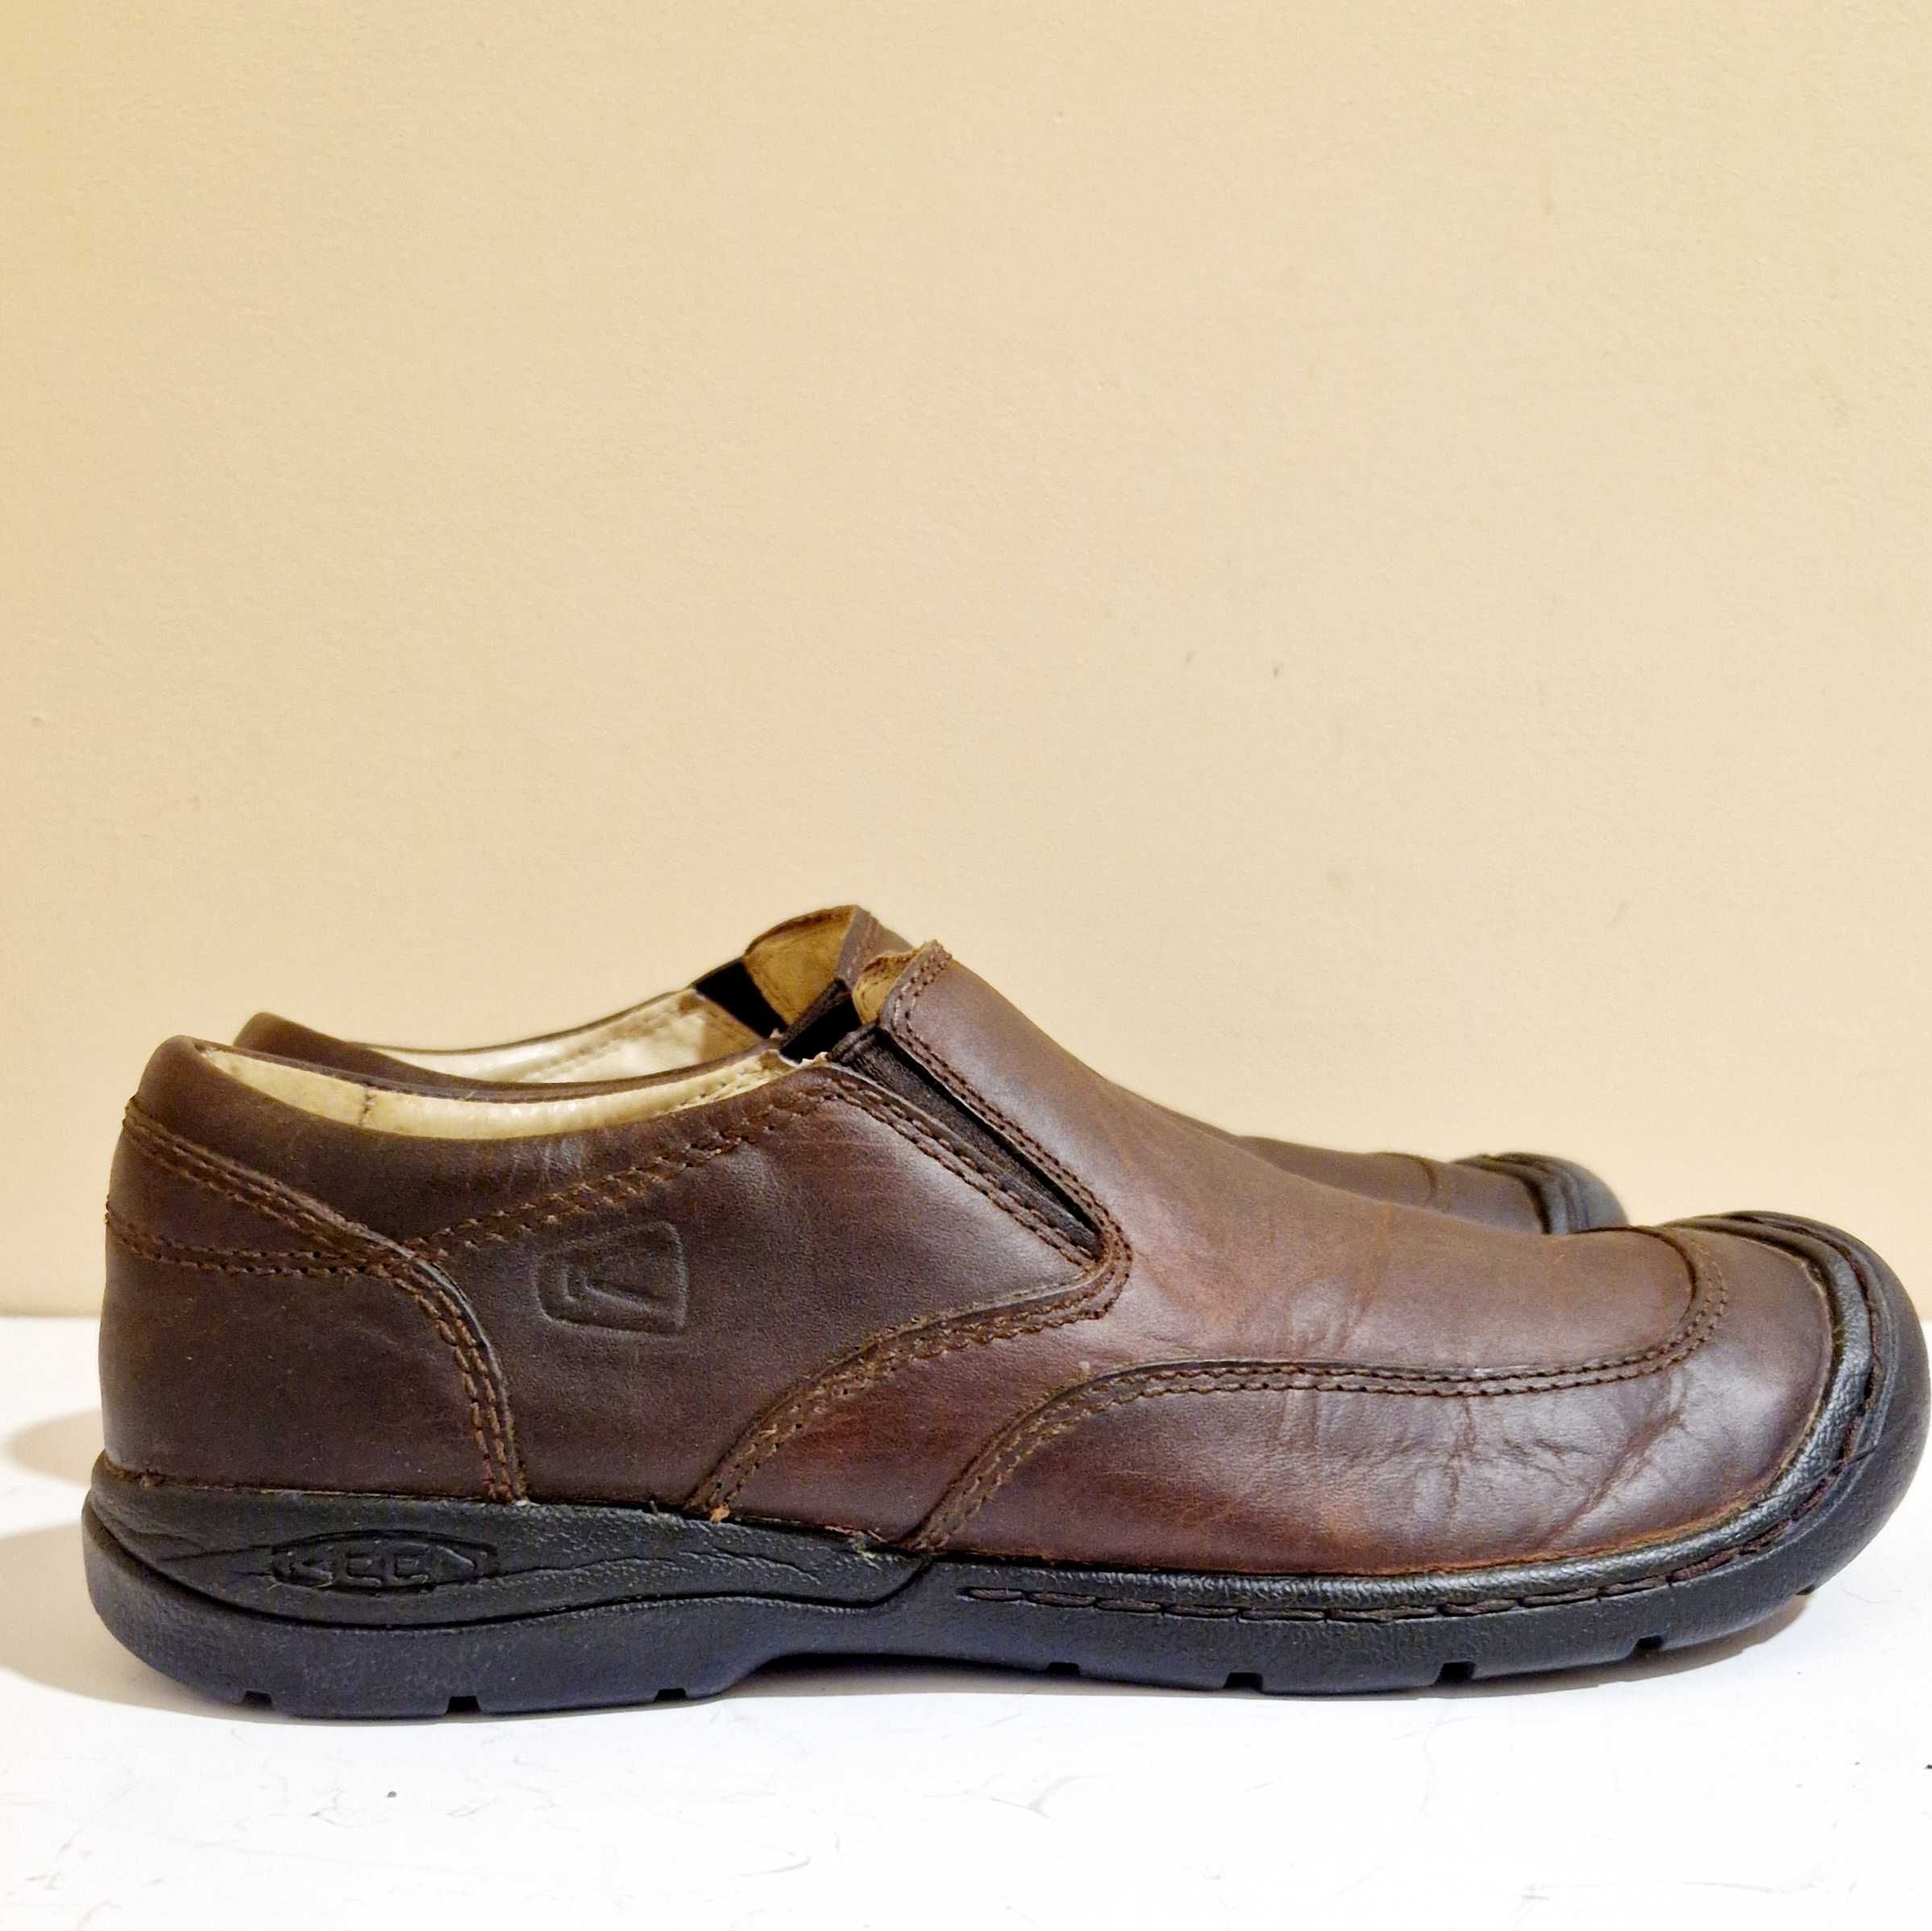 Keen kc 0712 туфли черевики кожаные трекинговые коричневые 42